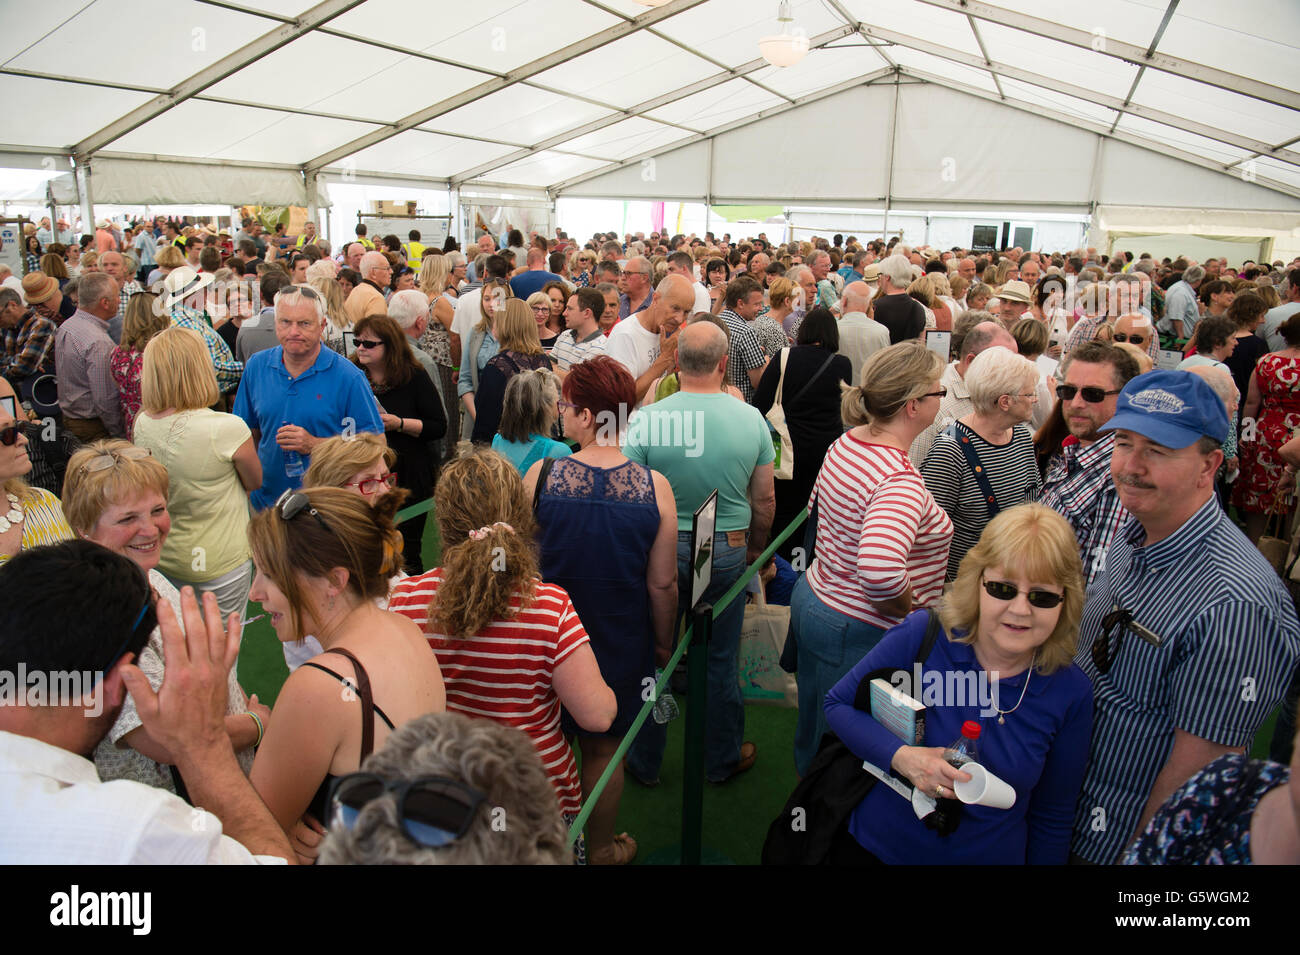 Code folle di persone in attesa per entrare in uno dei principali eventi all'Hay Festival della letteratura e delle arti, Hay on Wye, Powys, Wales UK, domenica 05 giugno 2016 Foto Stock